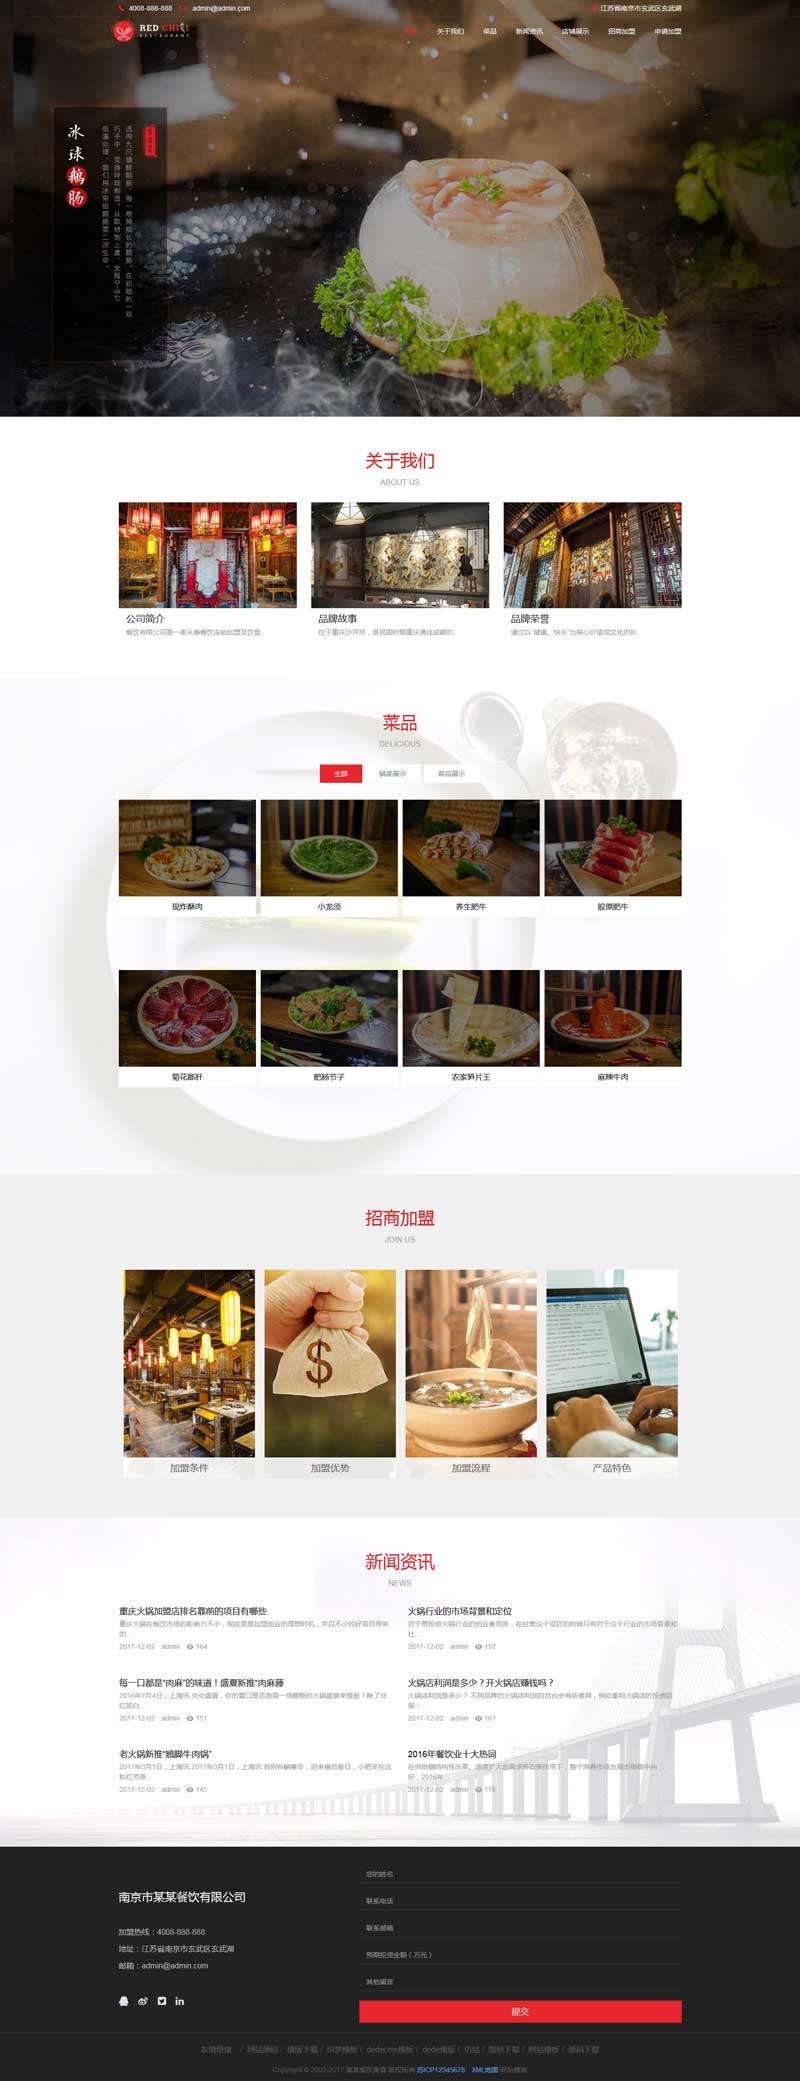 品牌餐饮美食加盟网站Dede织梦模板(带手机版)效果图